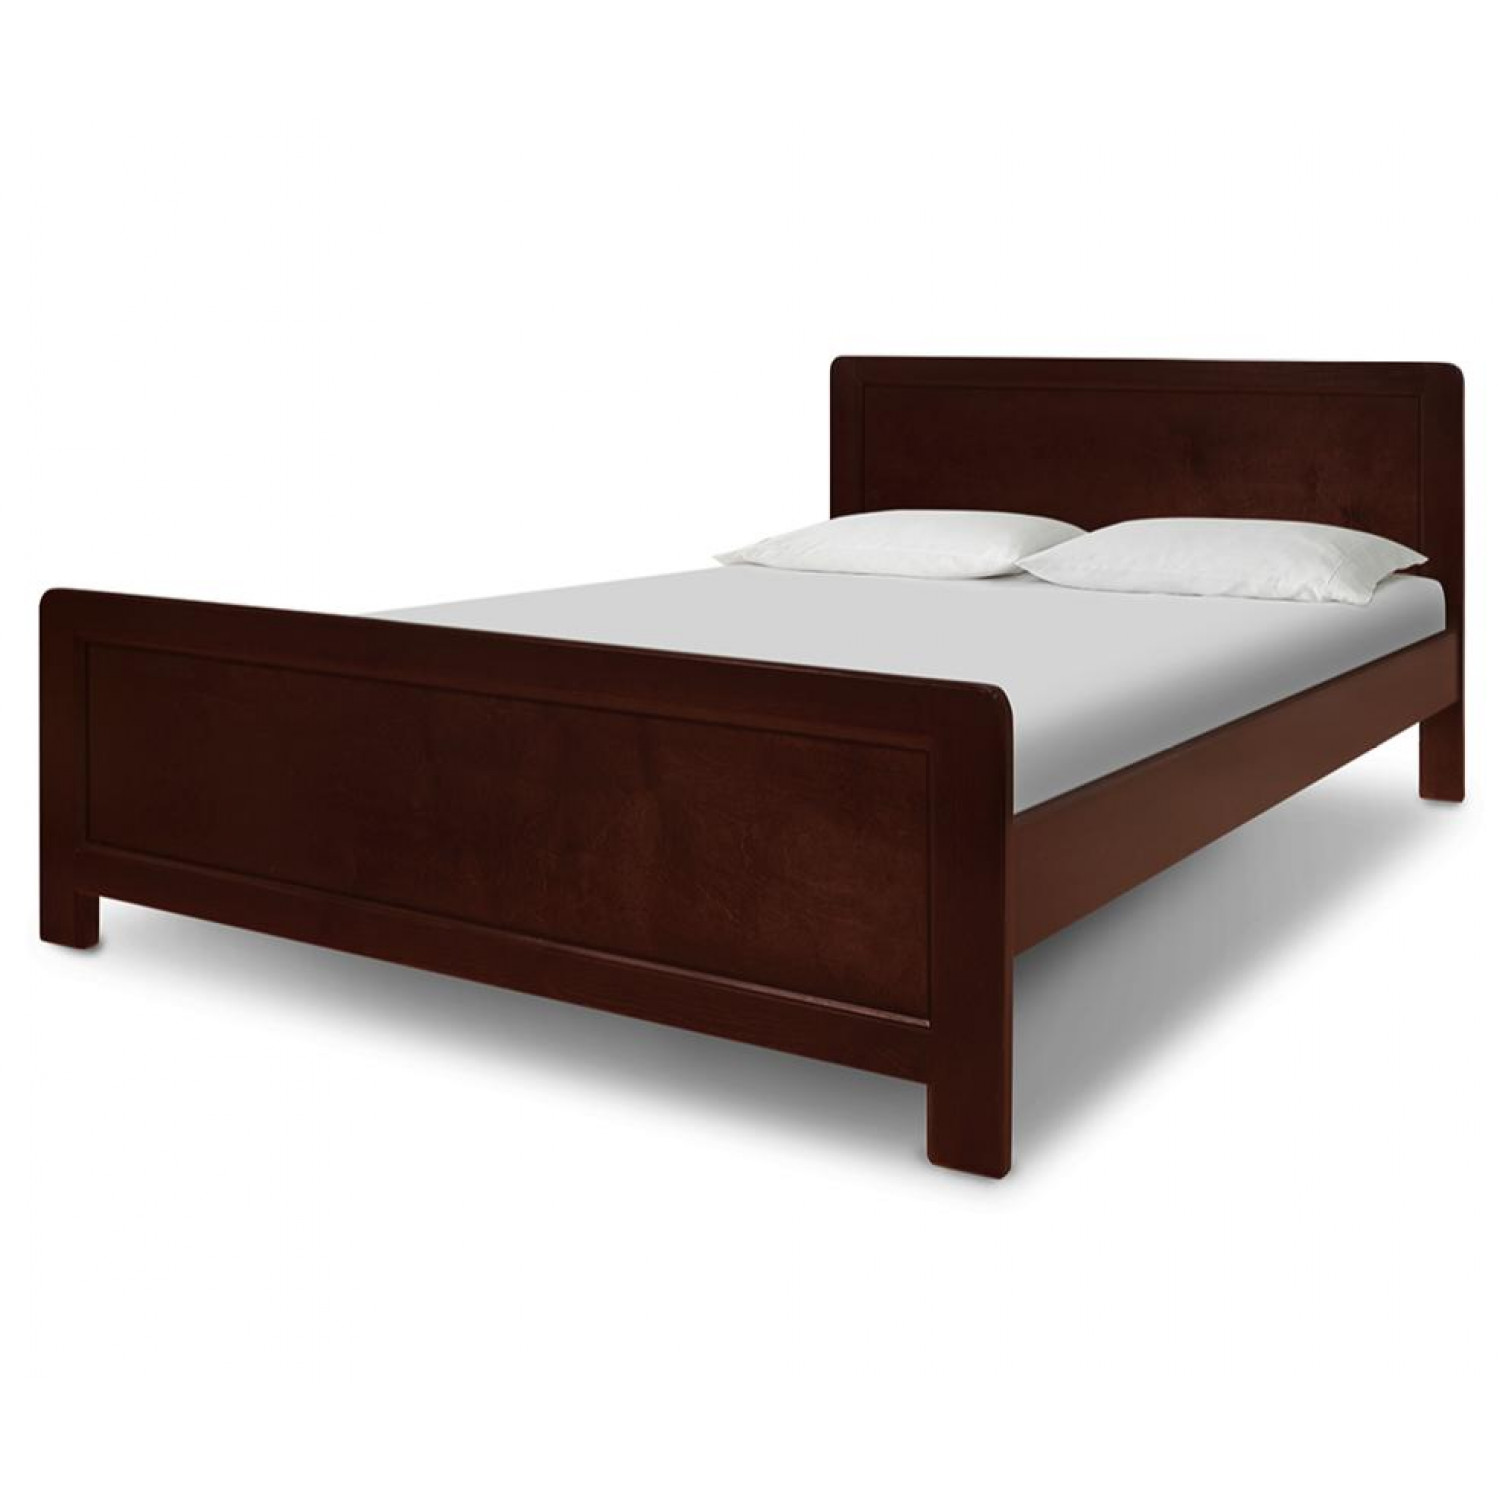 Купить деревянную кровать недорого. Кровать ВМК-Шале мантра. Кровать Аскона из массива. Кровать Аскона из массива сосны. Кровать массив дерева 140х200.